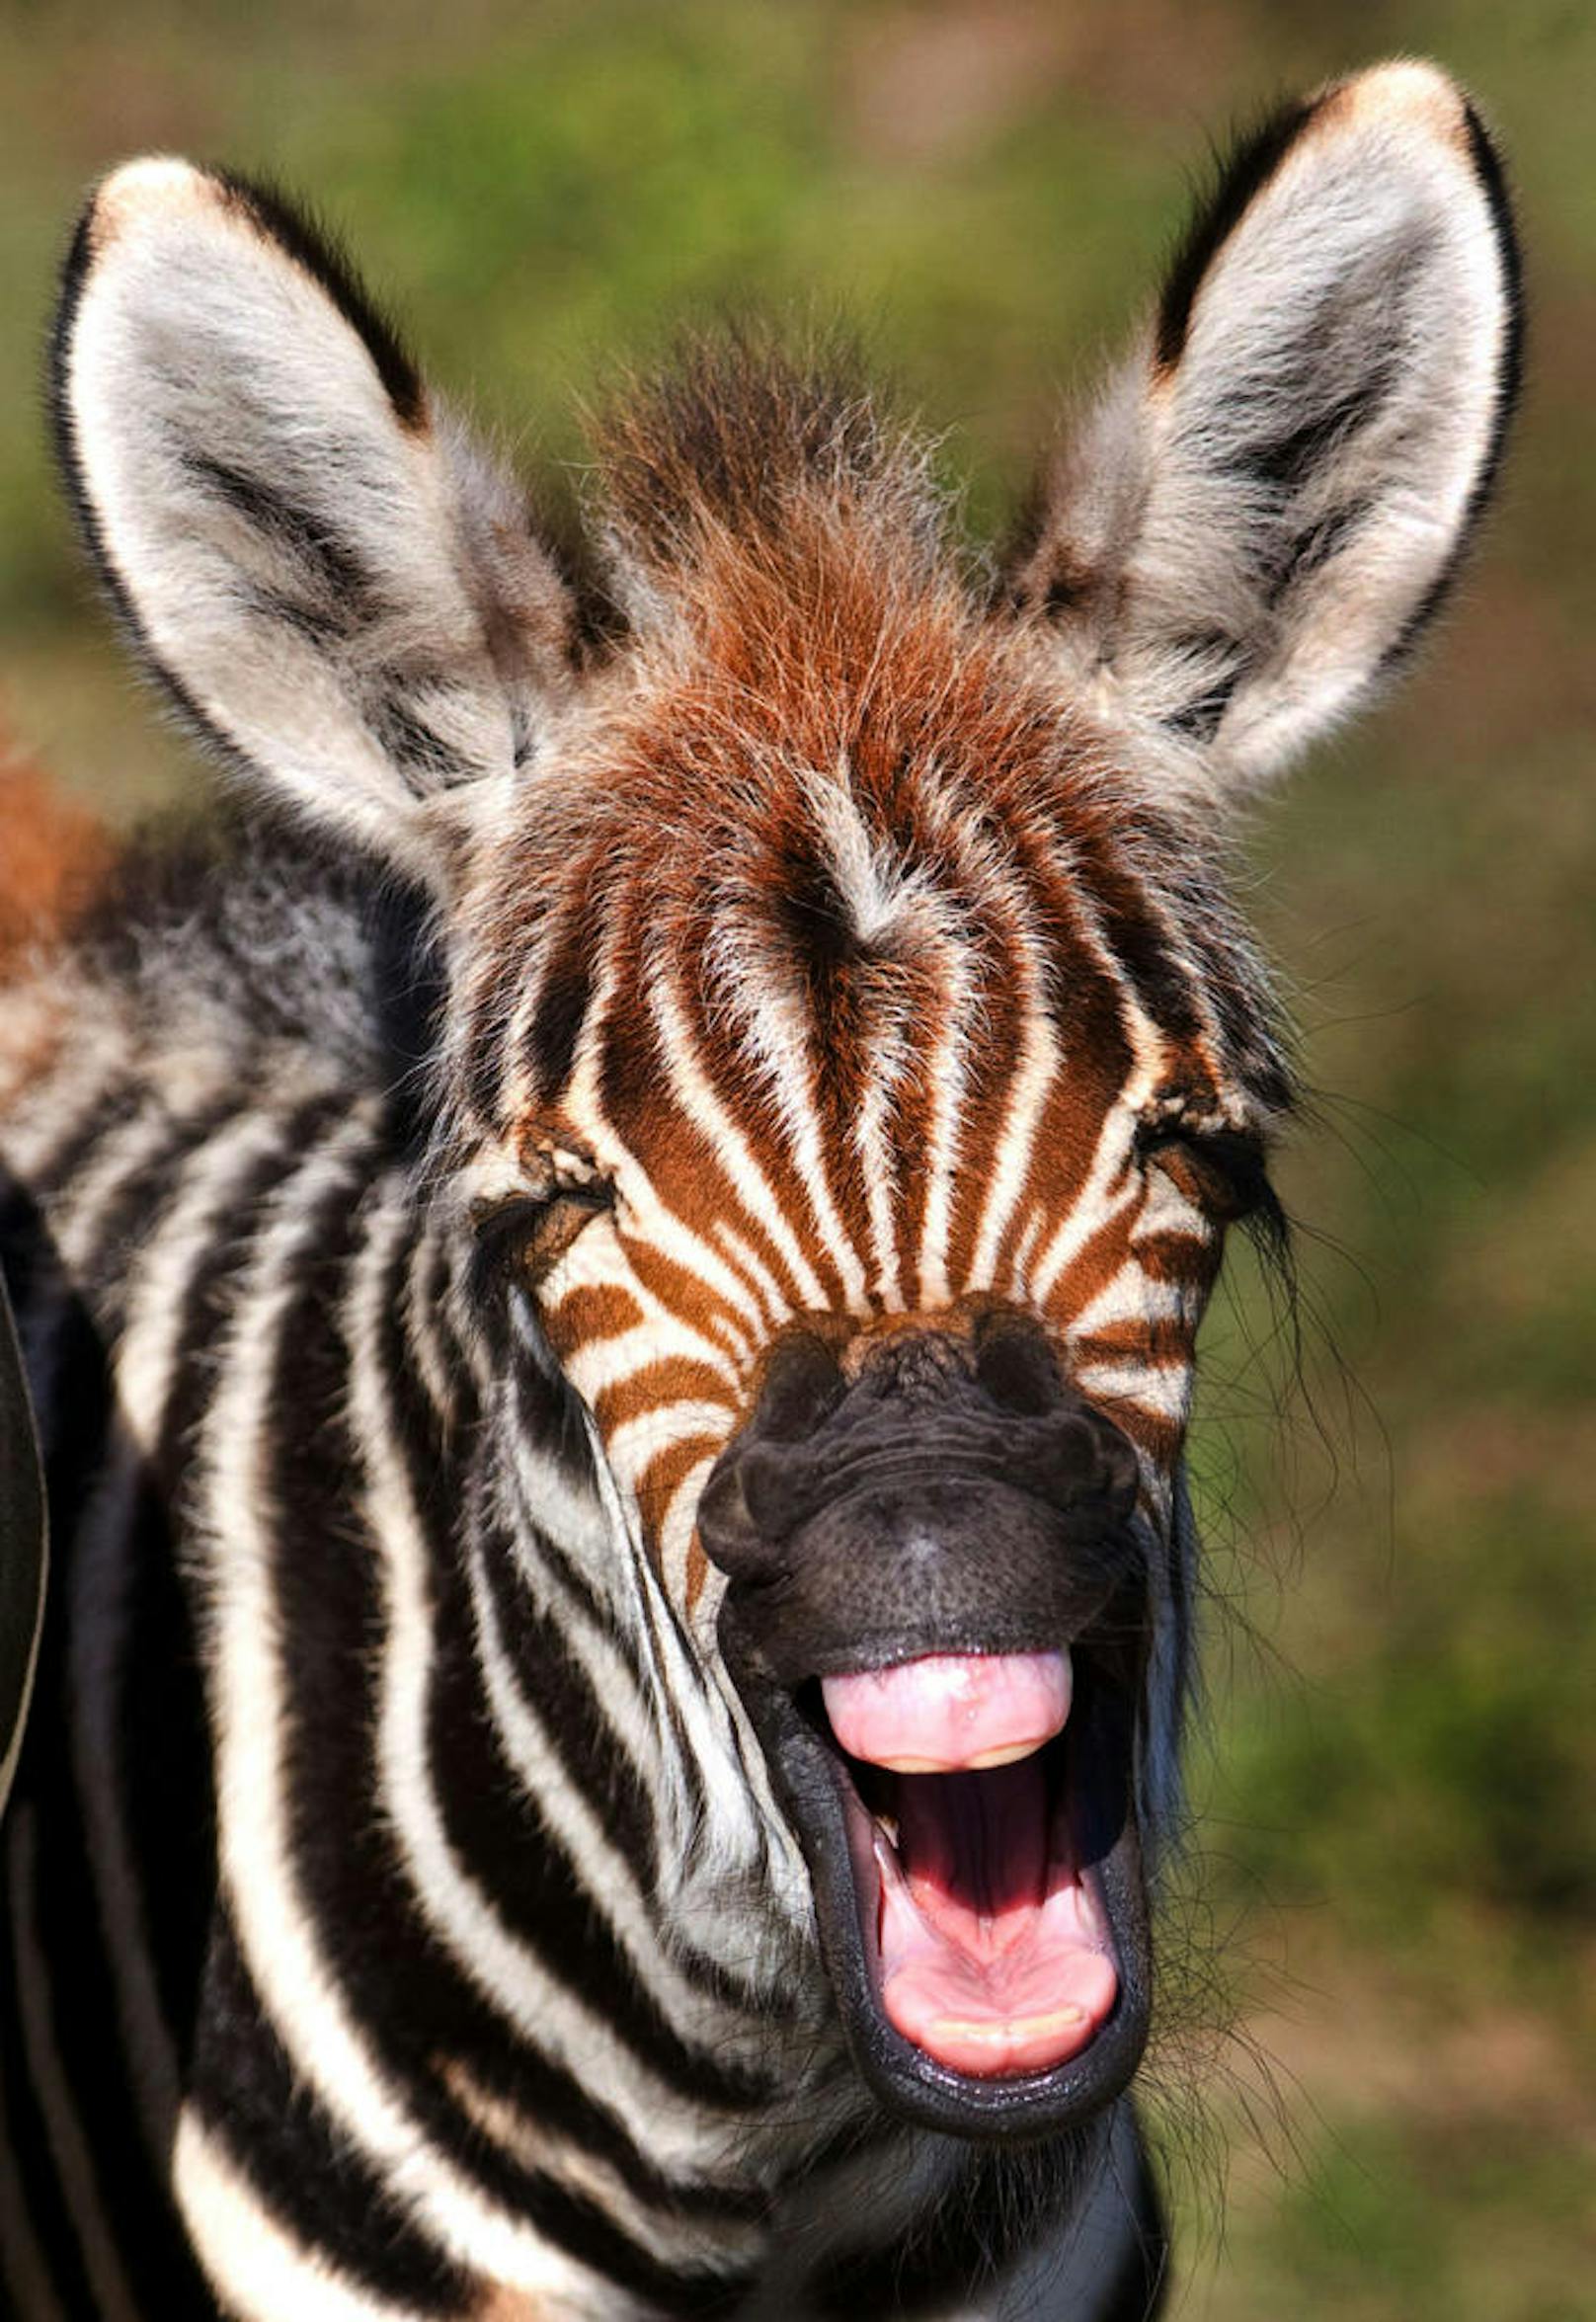 <b>Tierisch lustig!</b> Dieses junge Zebra scheint sich köstlich zu amüsieren.